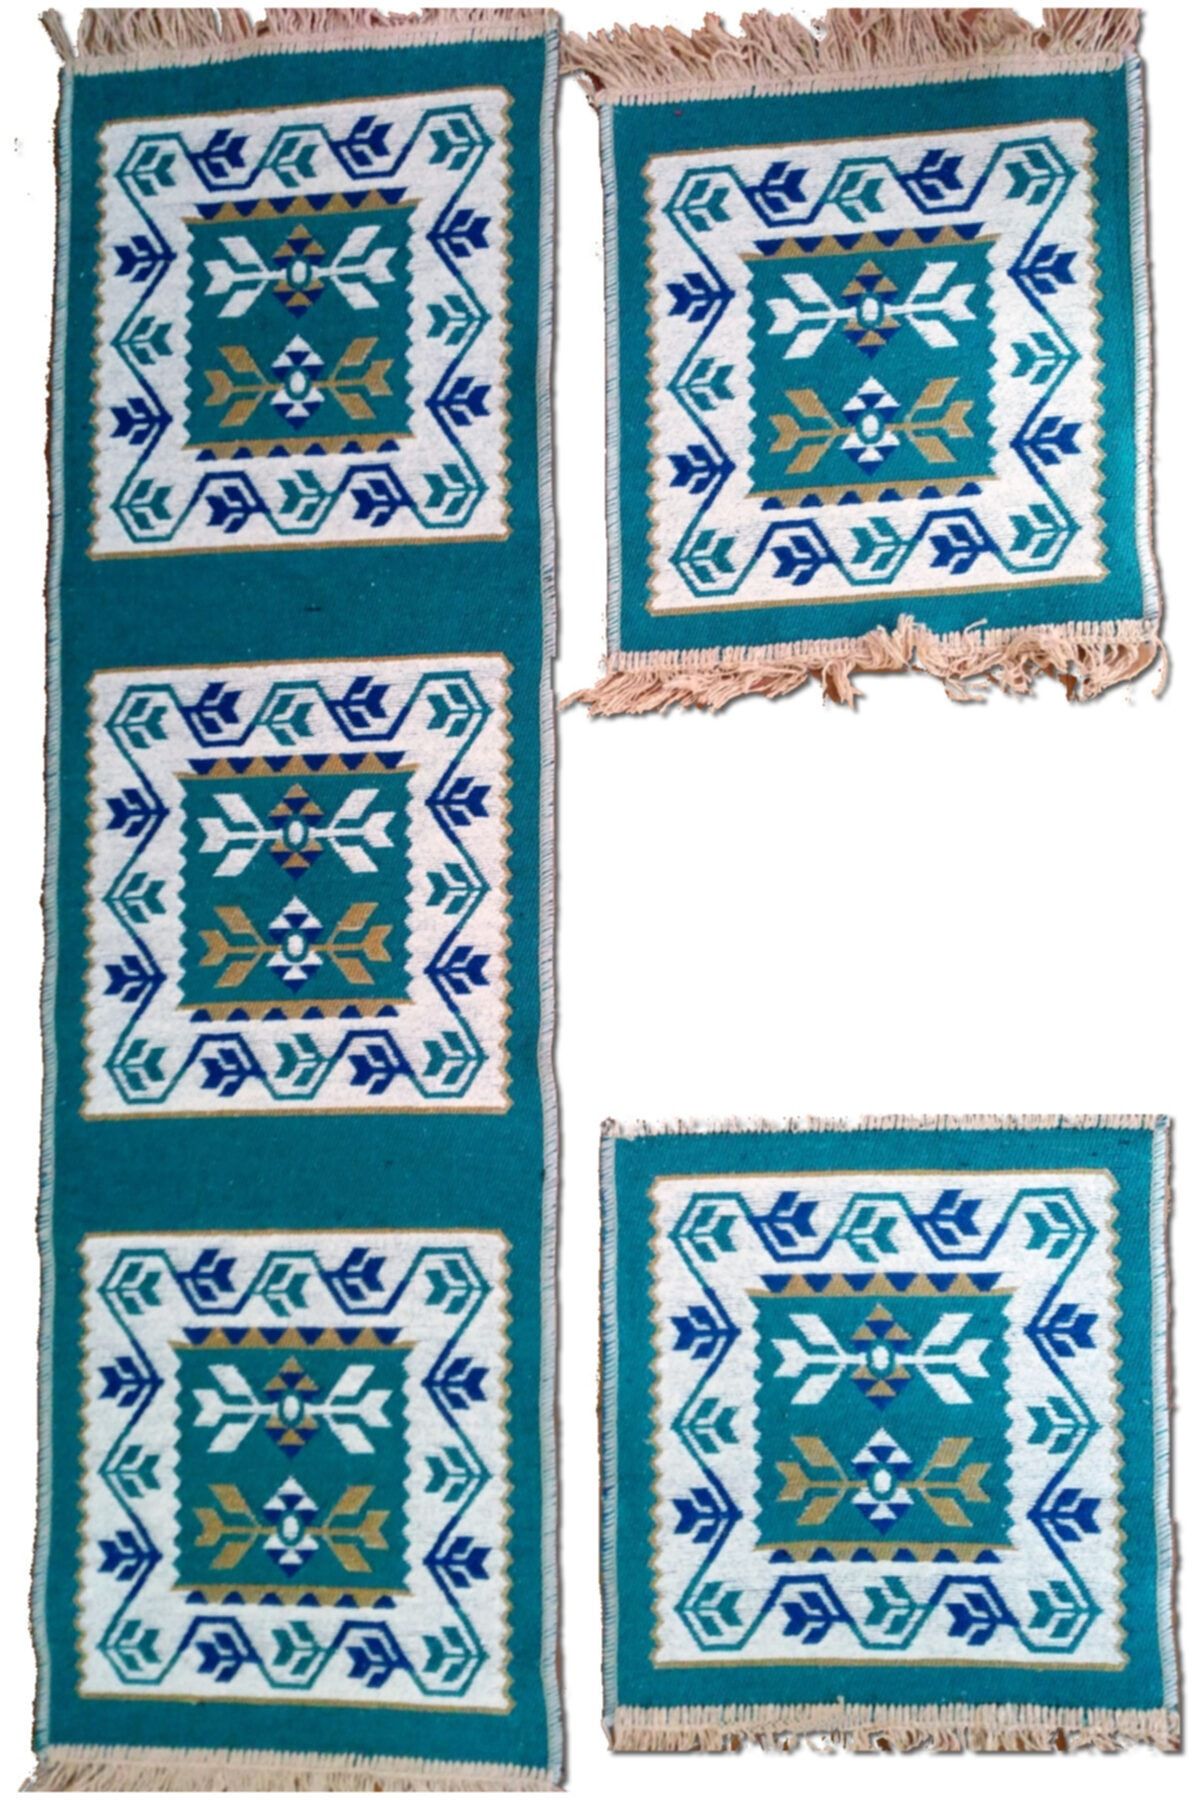 Başaran tekstil Antik Kilimden Serme Oto Kılıfı Takımı, Binek Araçlar Için, 3 Parça 40x130cm